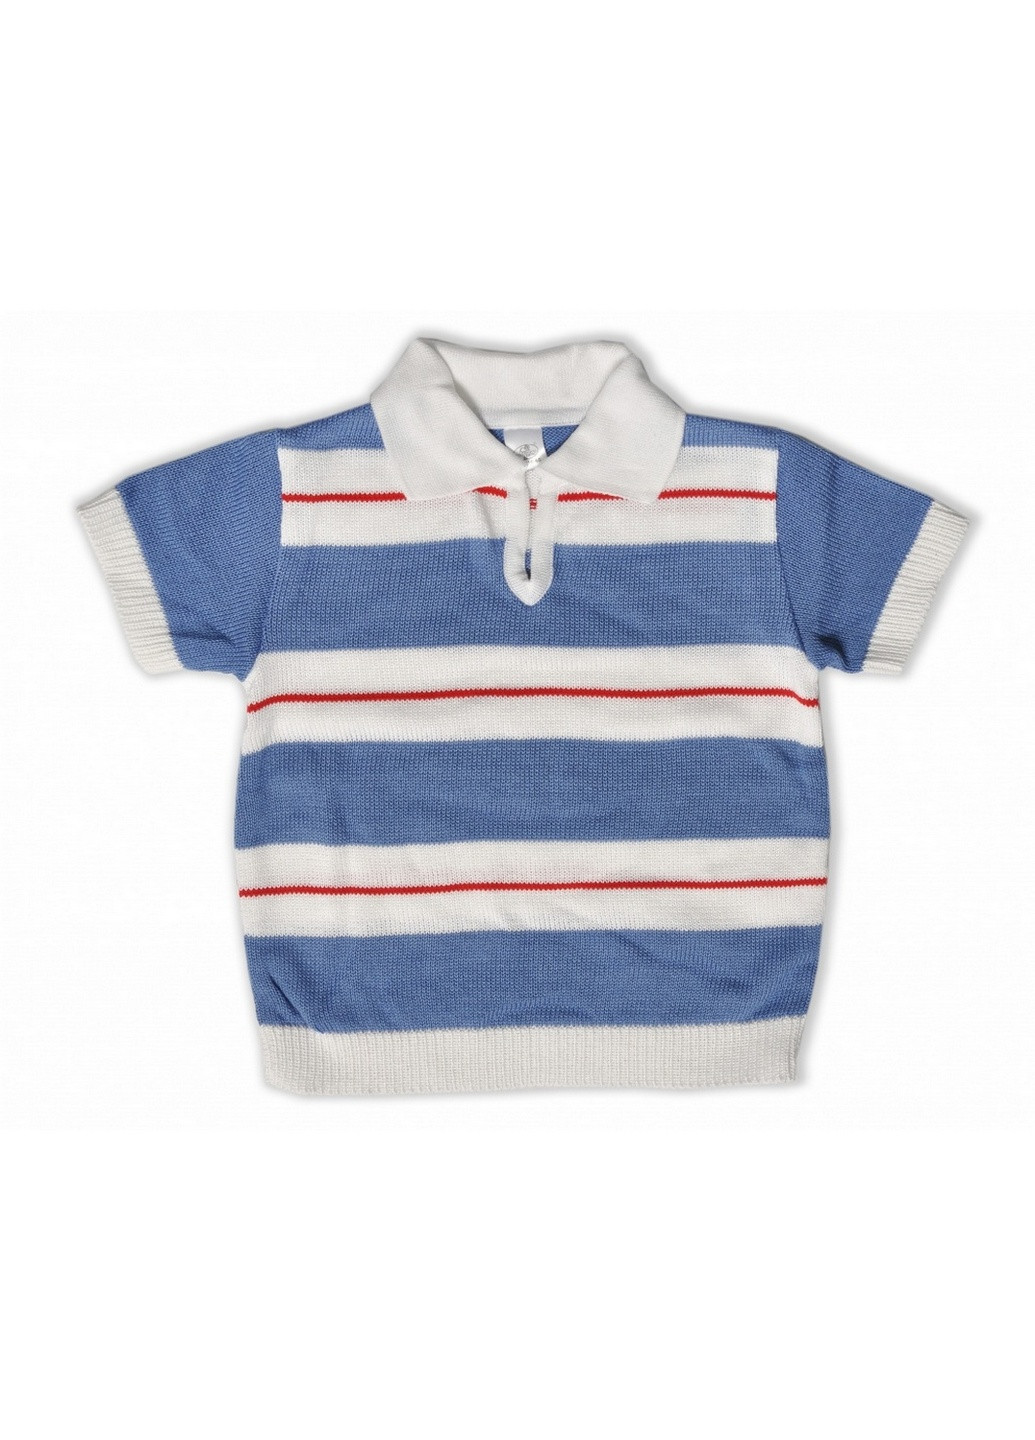 Синяя демисезонная футболка для мальчика Mari-Knit